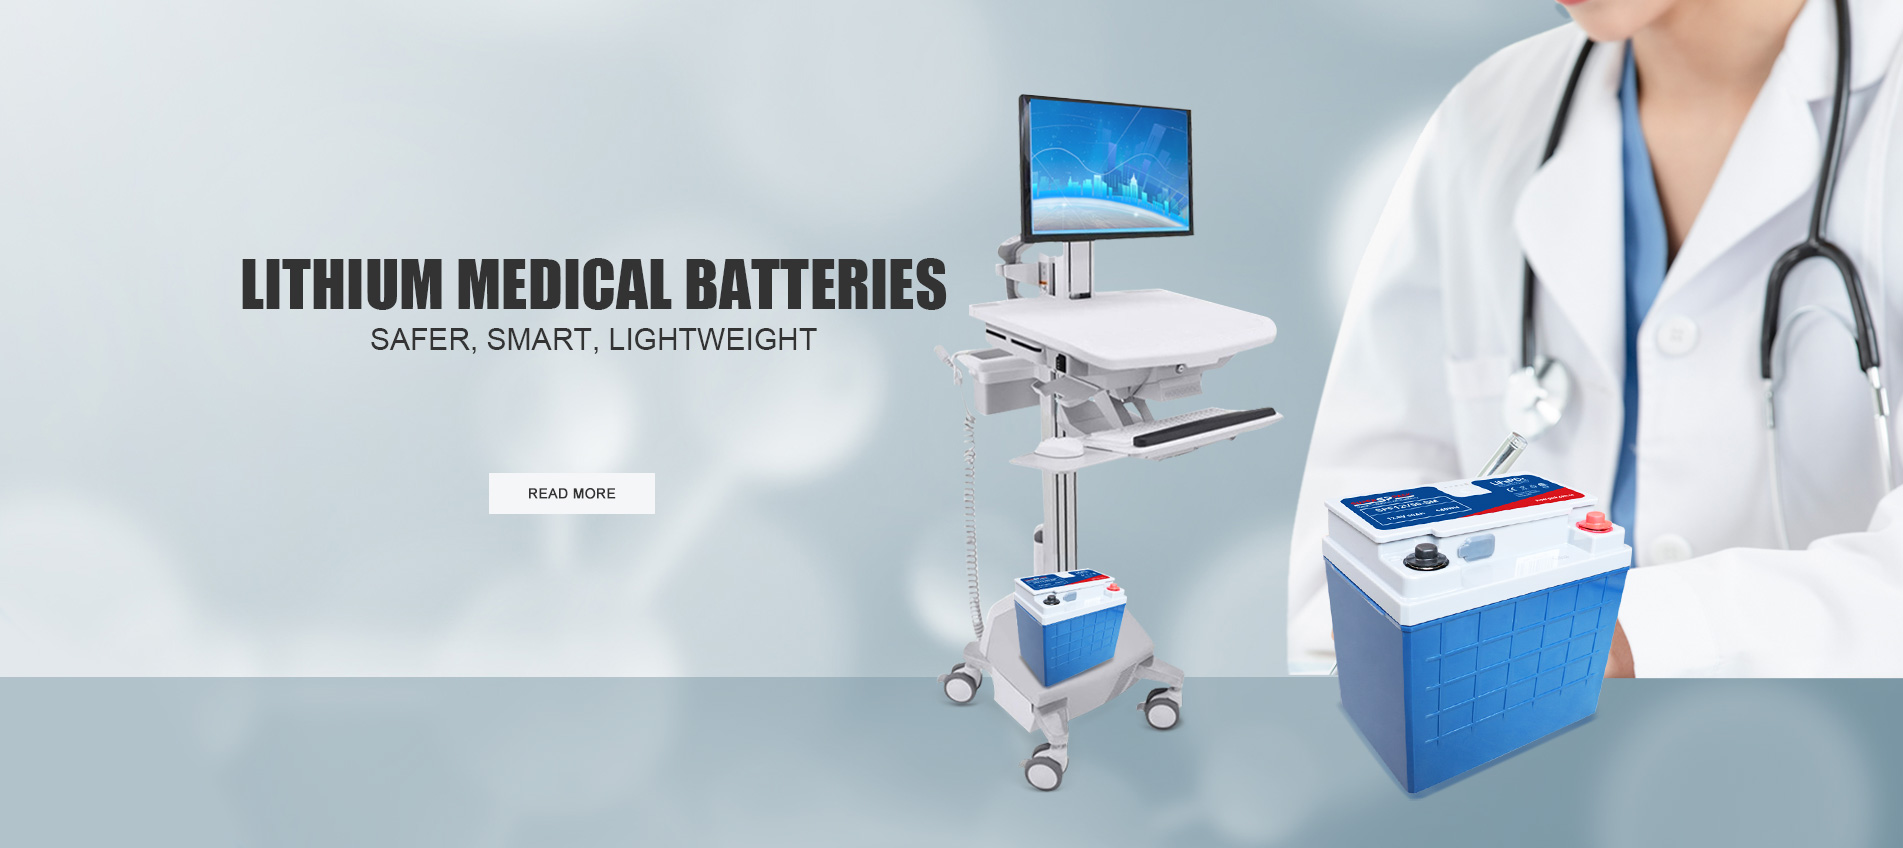 Superpack 12v50ah Lithium Medical Batteries